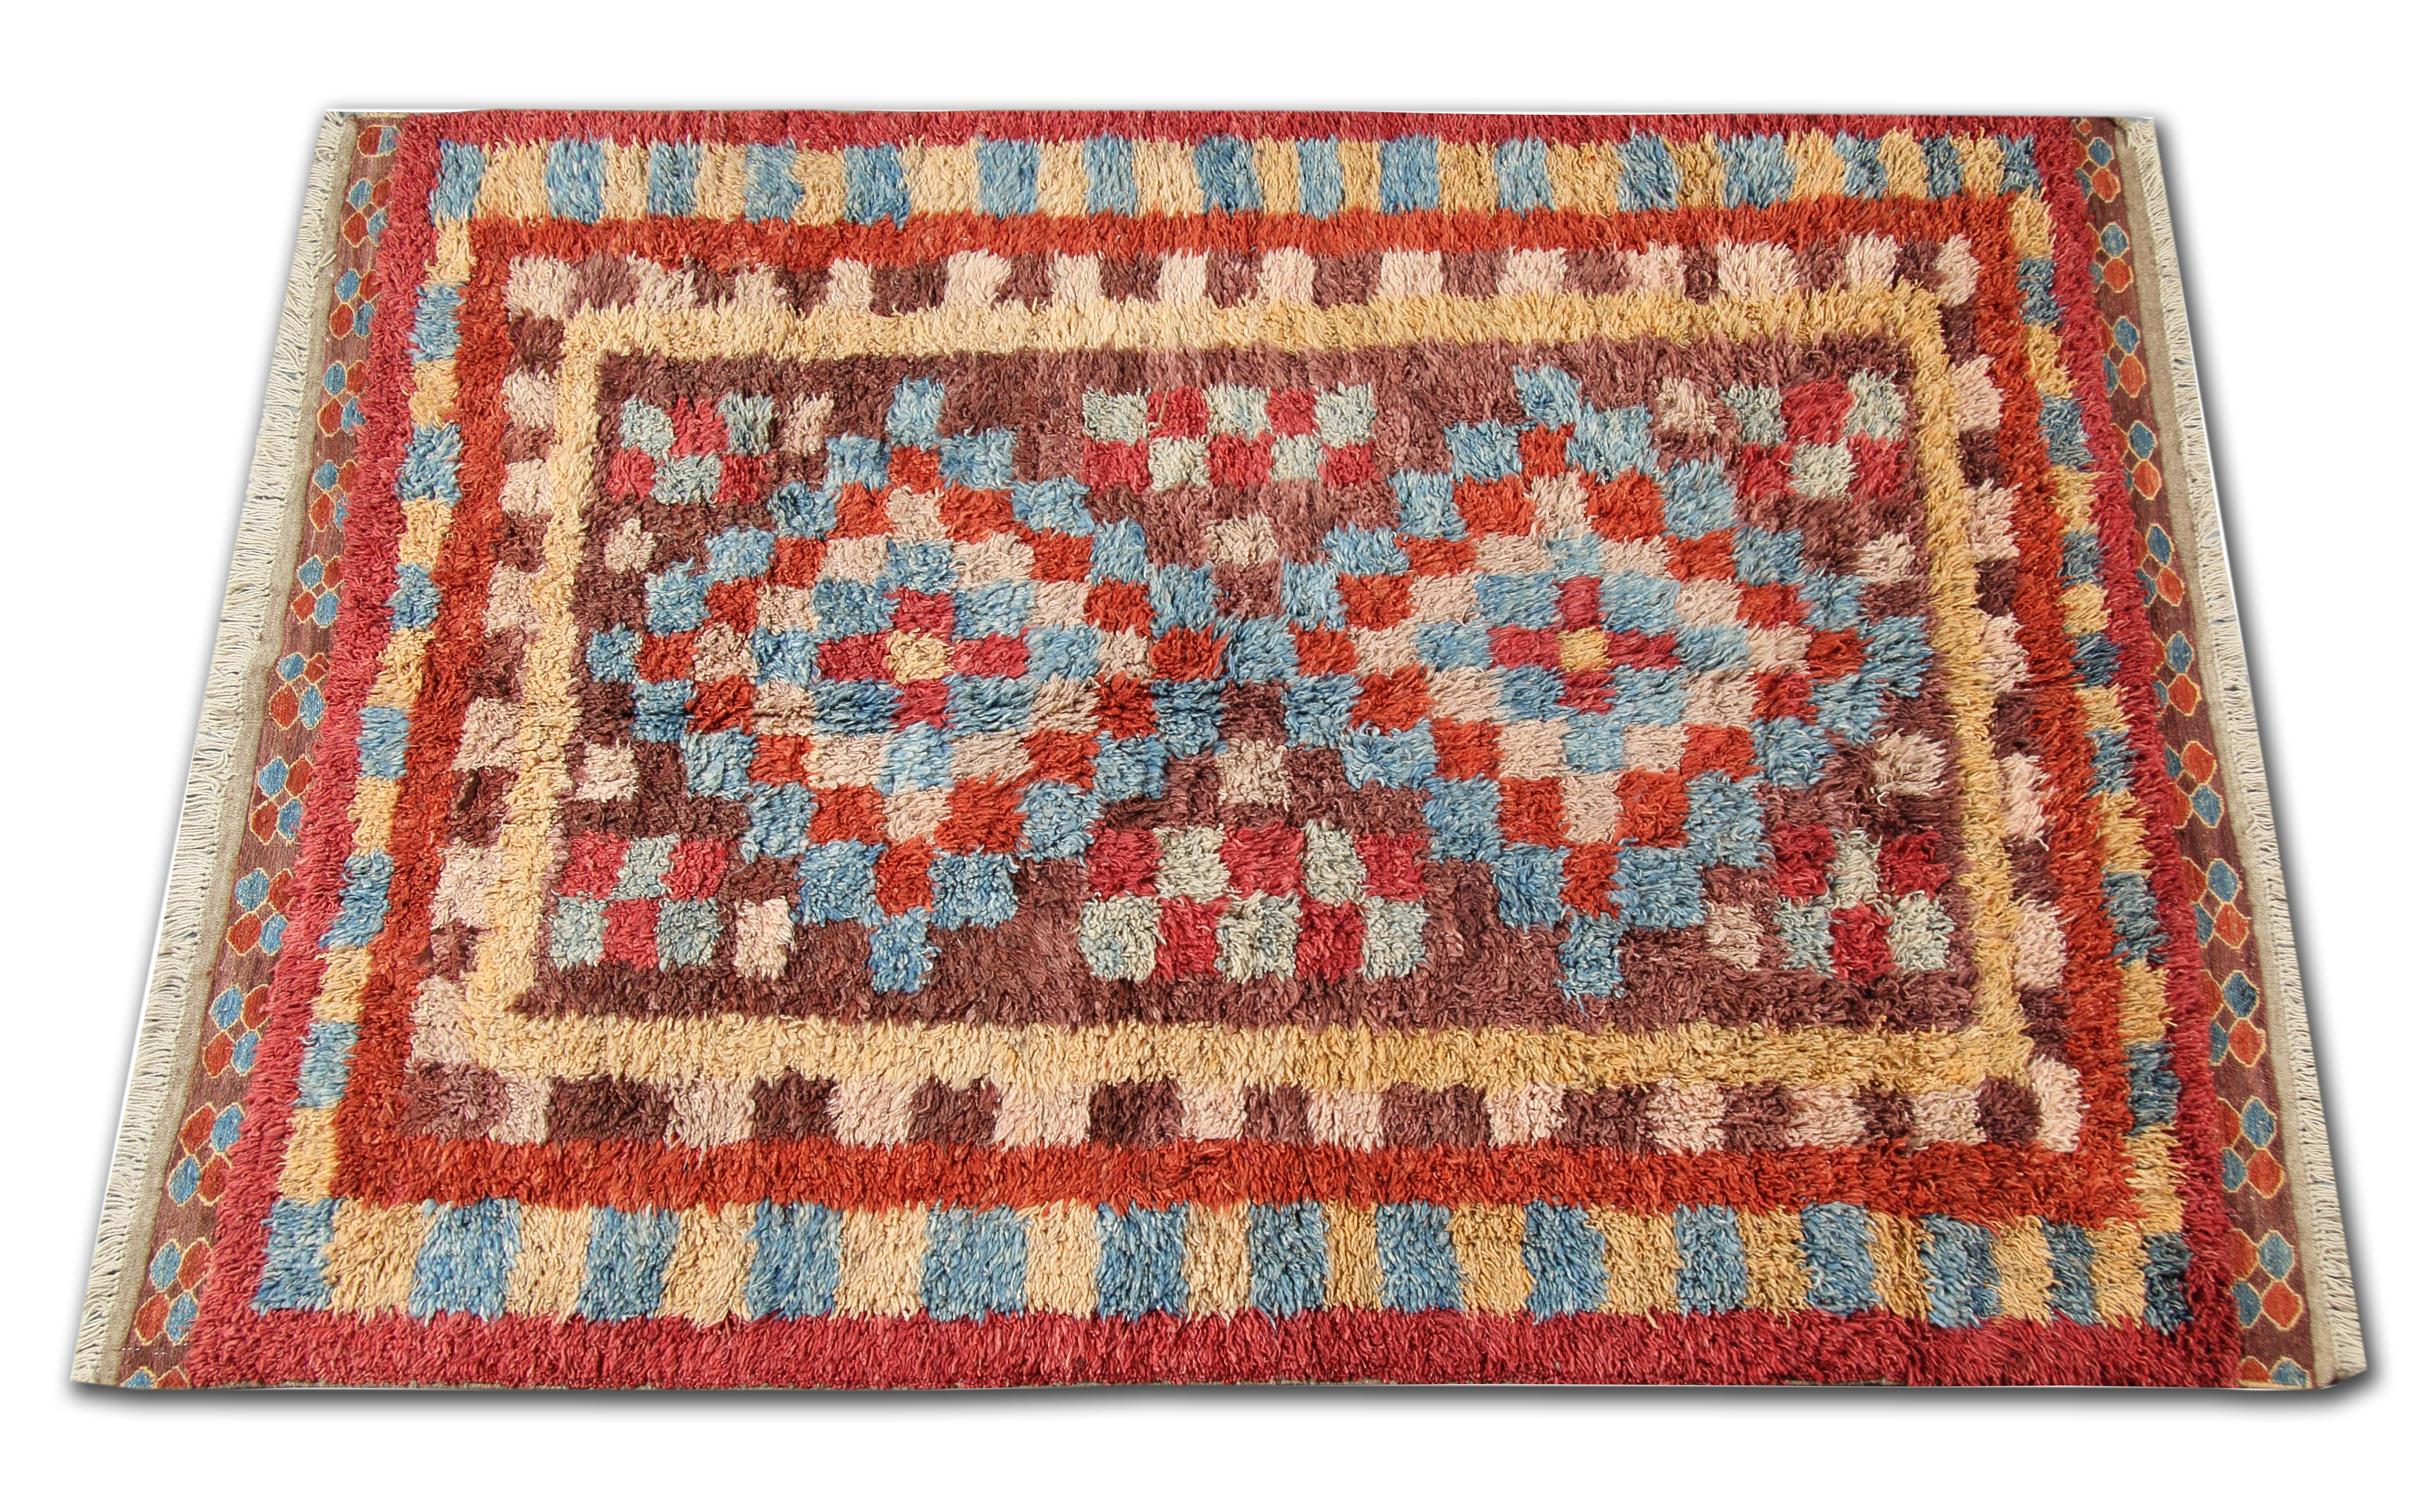 Dies ist ein Beispiel für einen handgewebten Teppich mit Motiven aus der Region Marokko. Marokko ist berühmt für seine primitiven traditionellen Teppiche mit langem Flor. Für die Herstellung dieses roten Teppichs verwendeten die Weber Wolle und